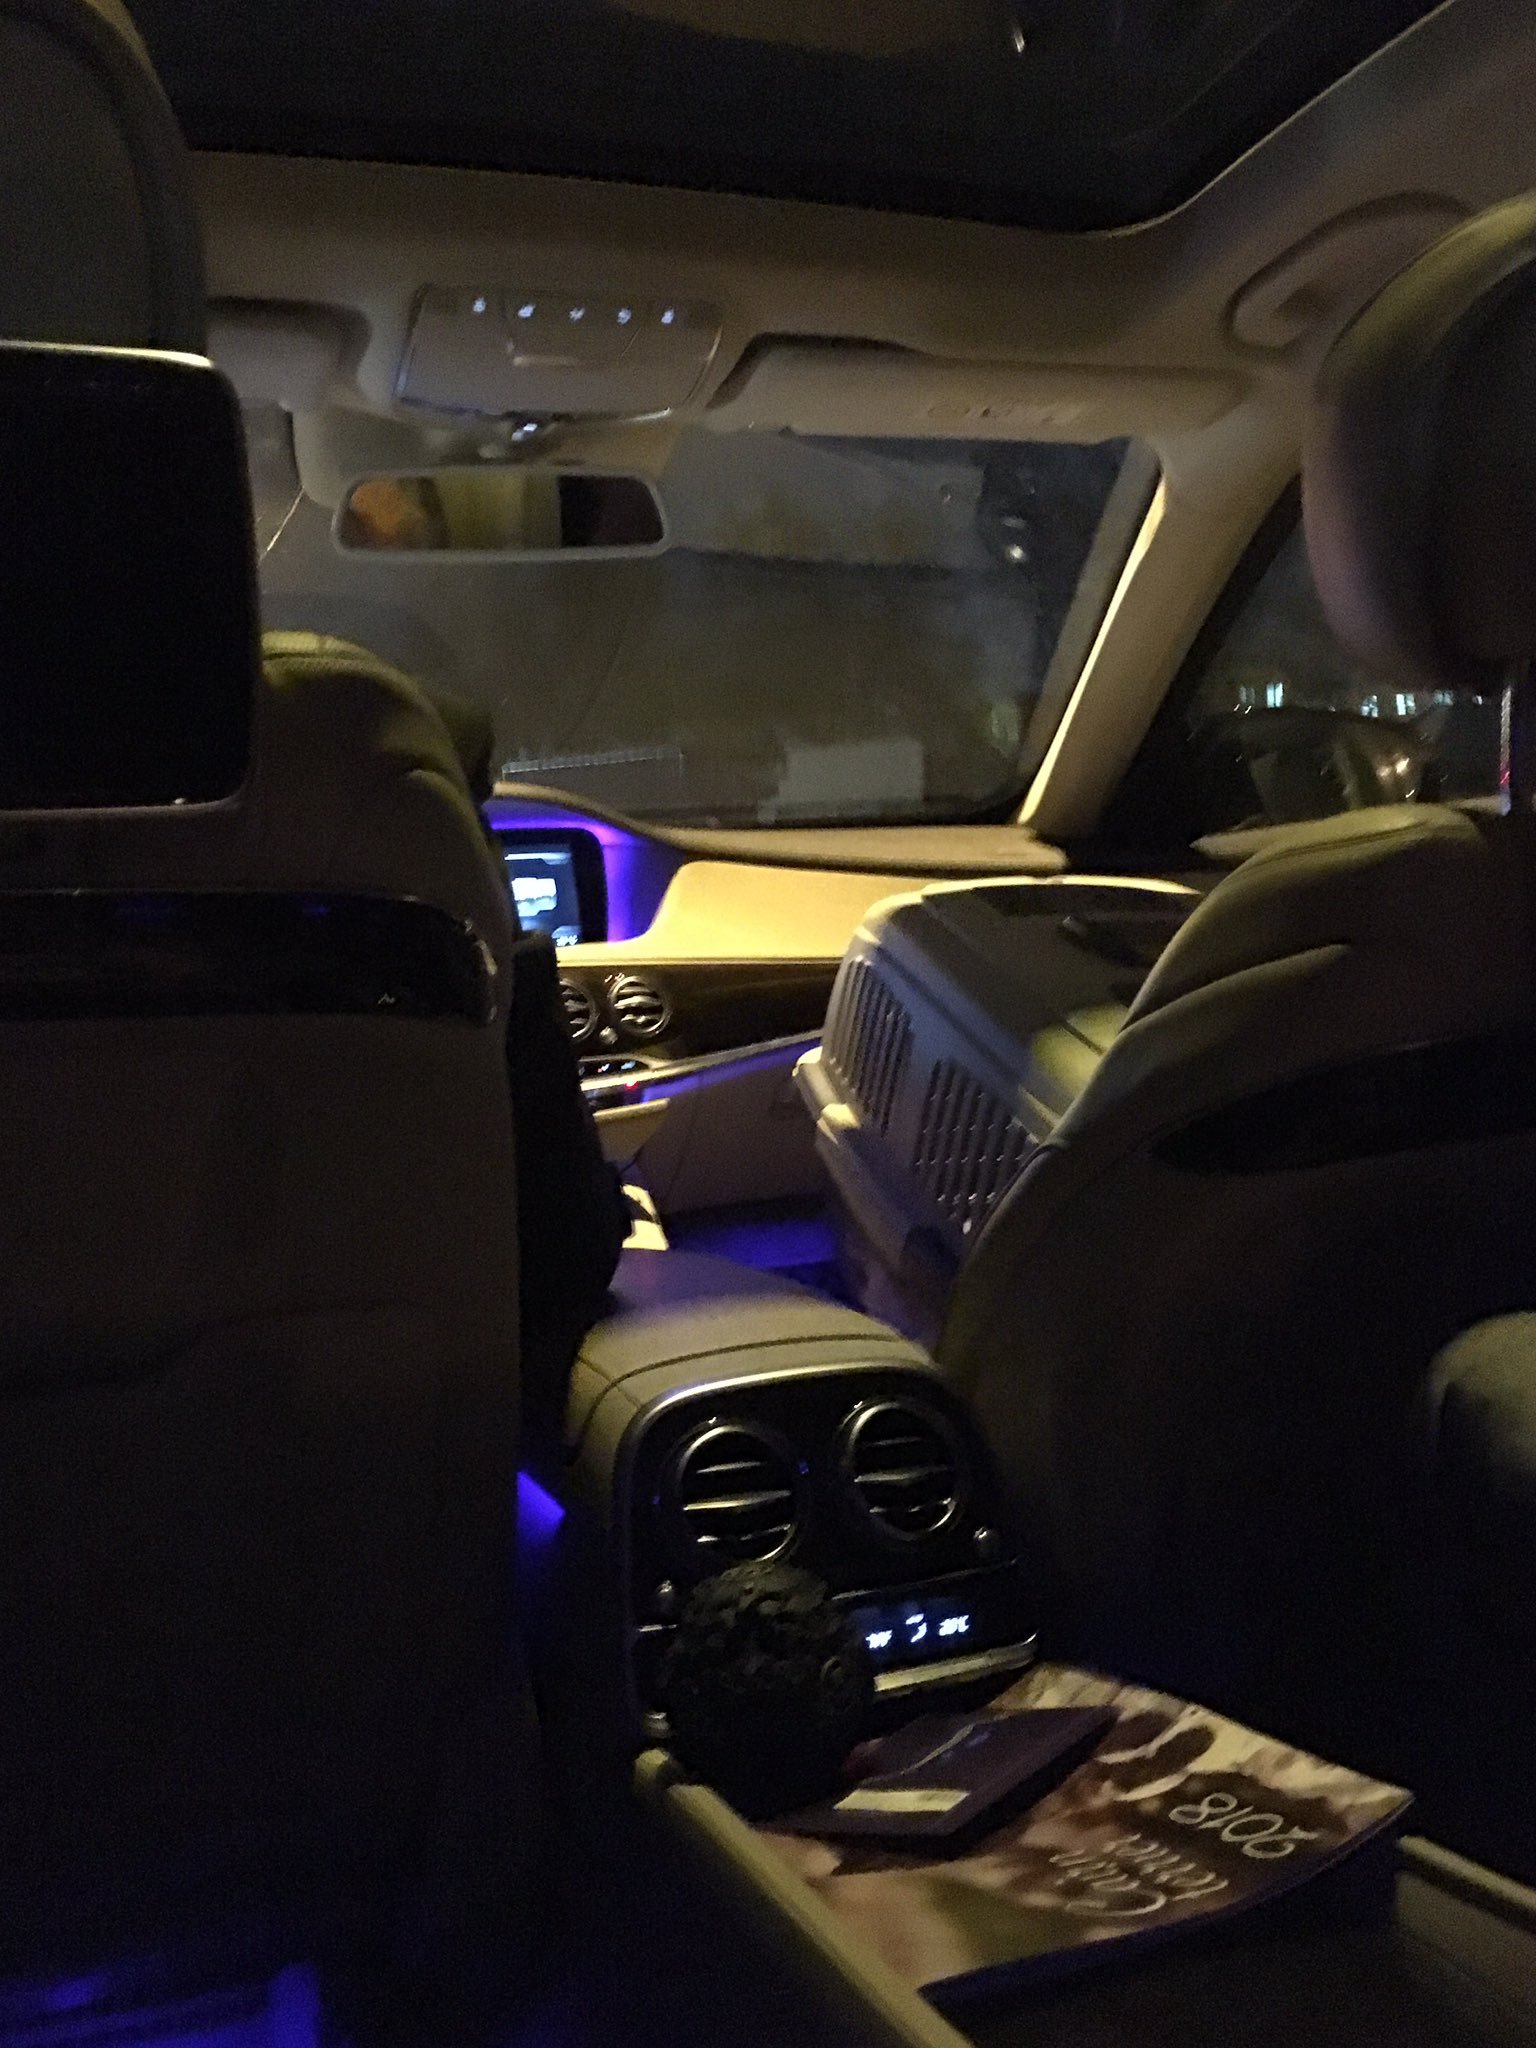 Фото в такси на заднем сиденье ночью